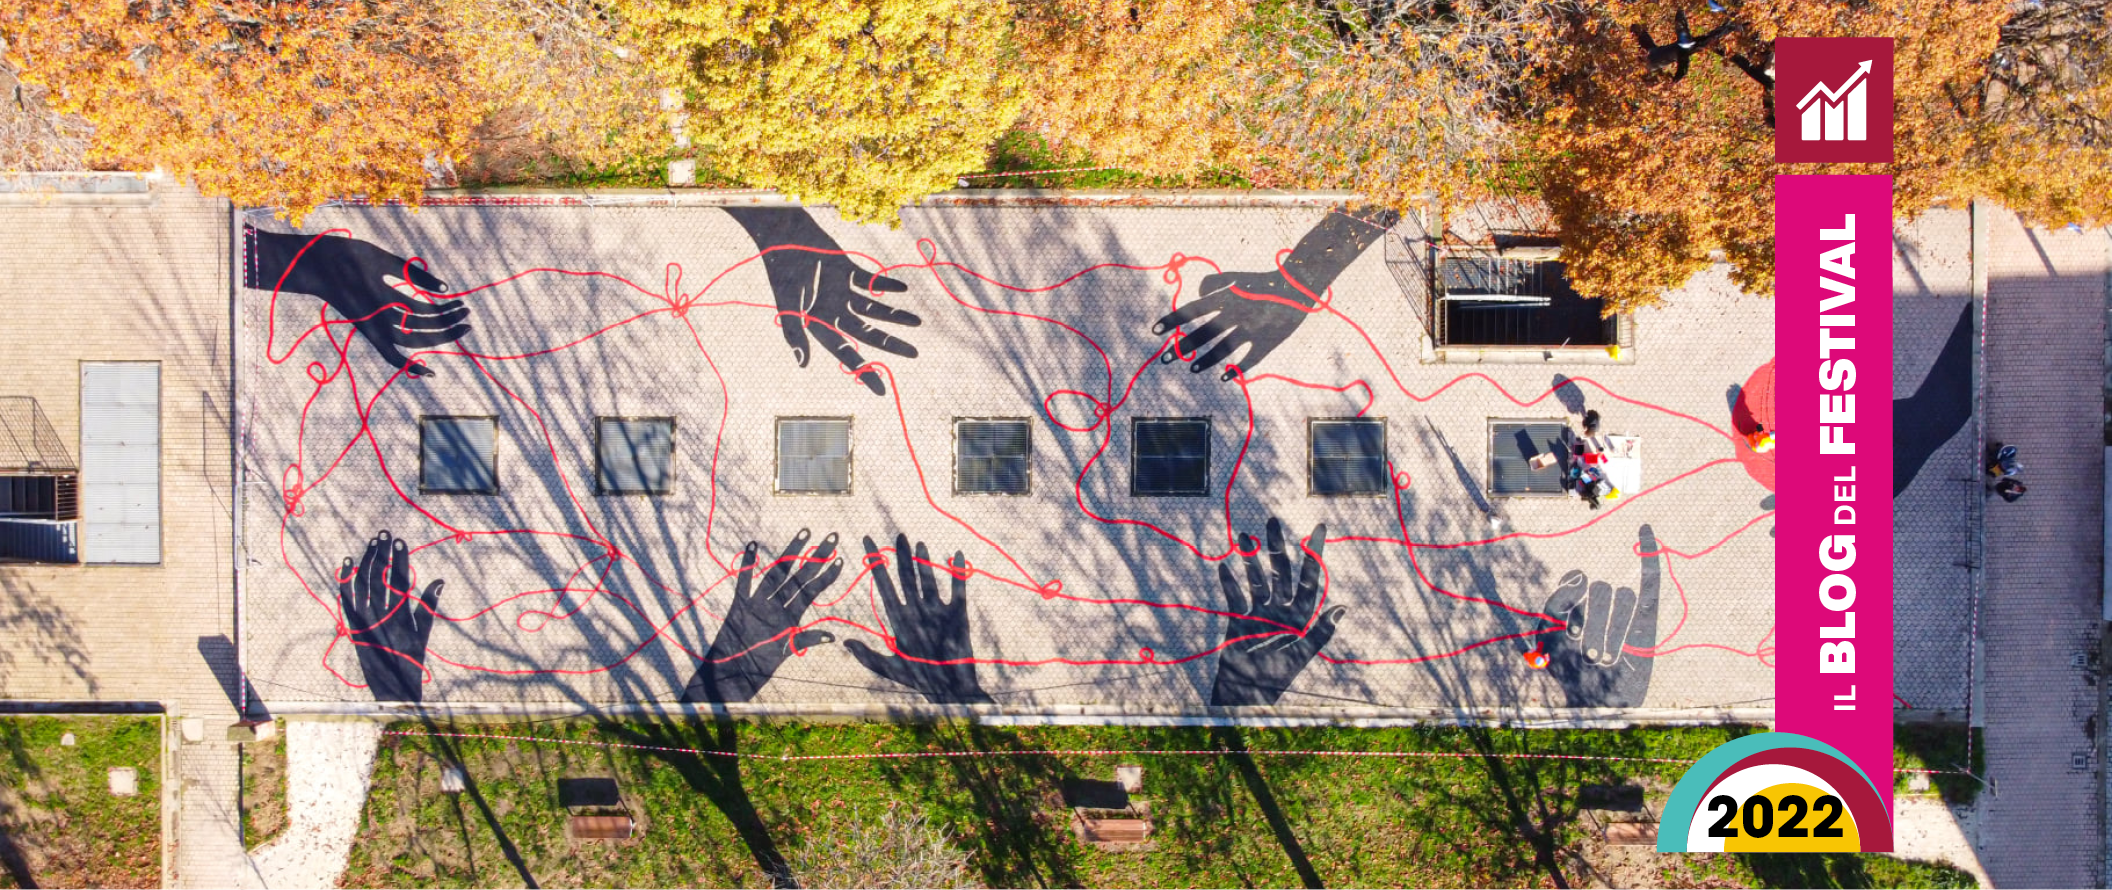 Fiamma Viva, a Bologna una grande opera di street art contro la violenza sulle donne